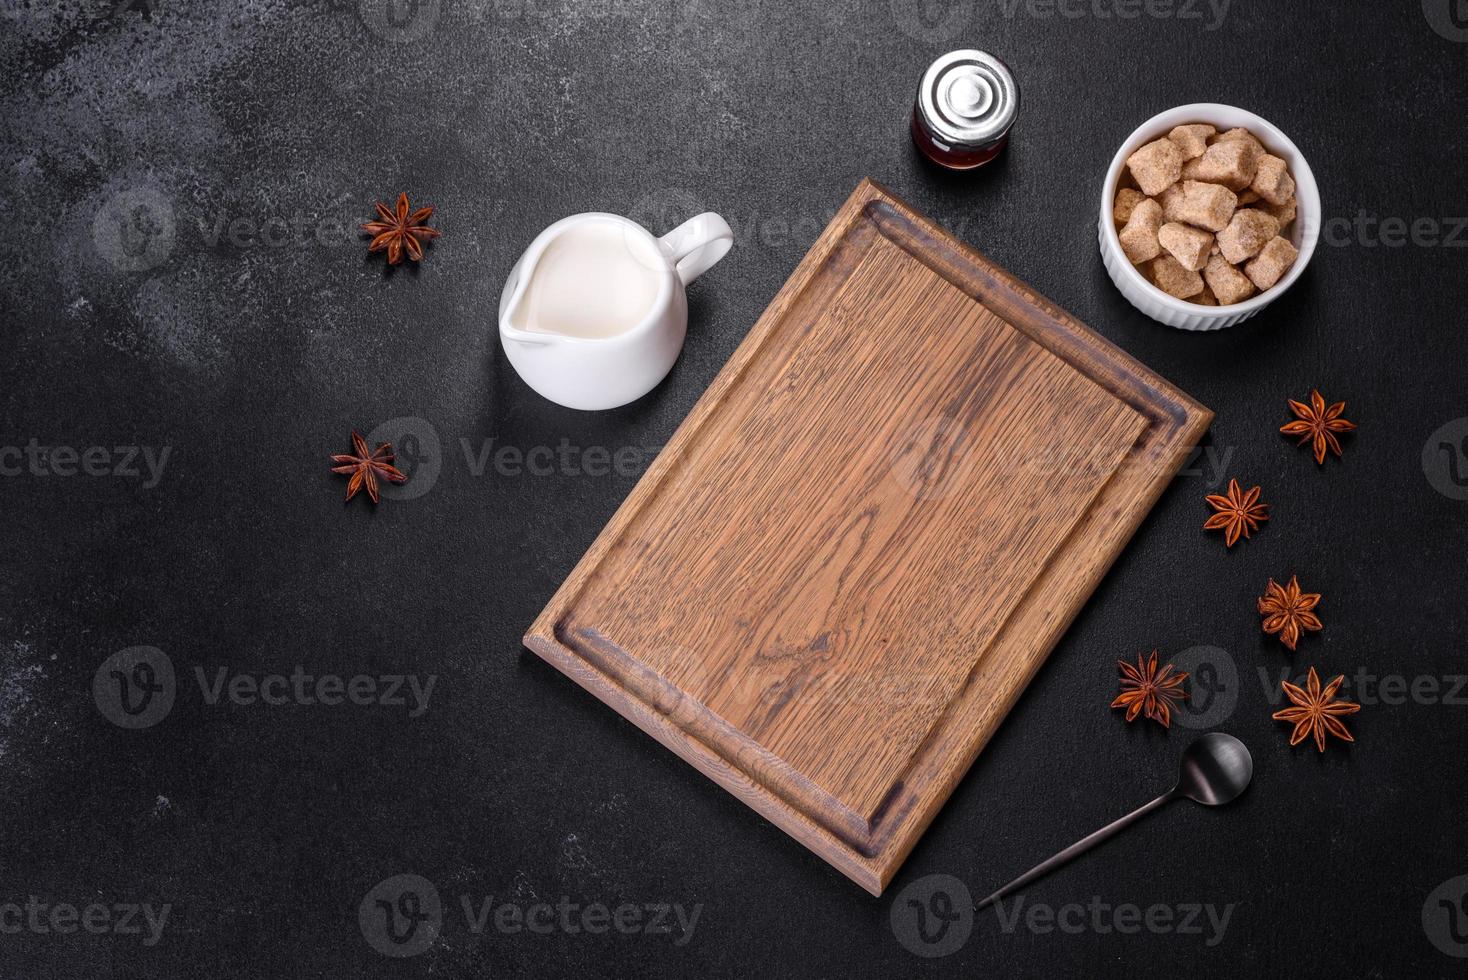 açúcar, canela e outras especiarias em uma tábua de madeira foto